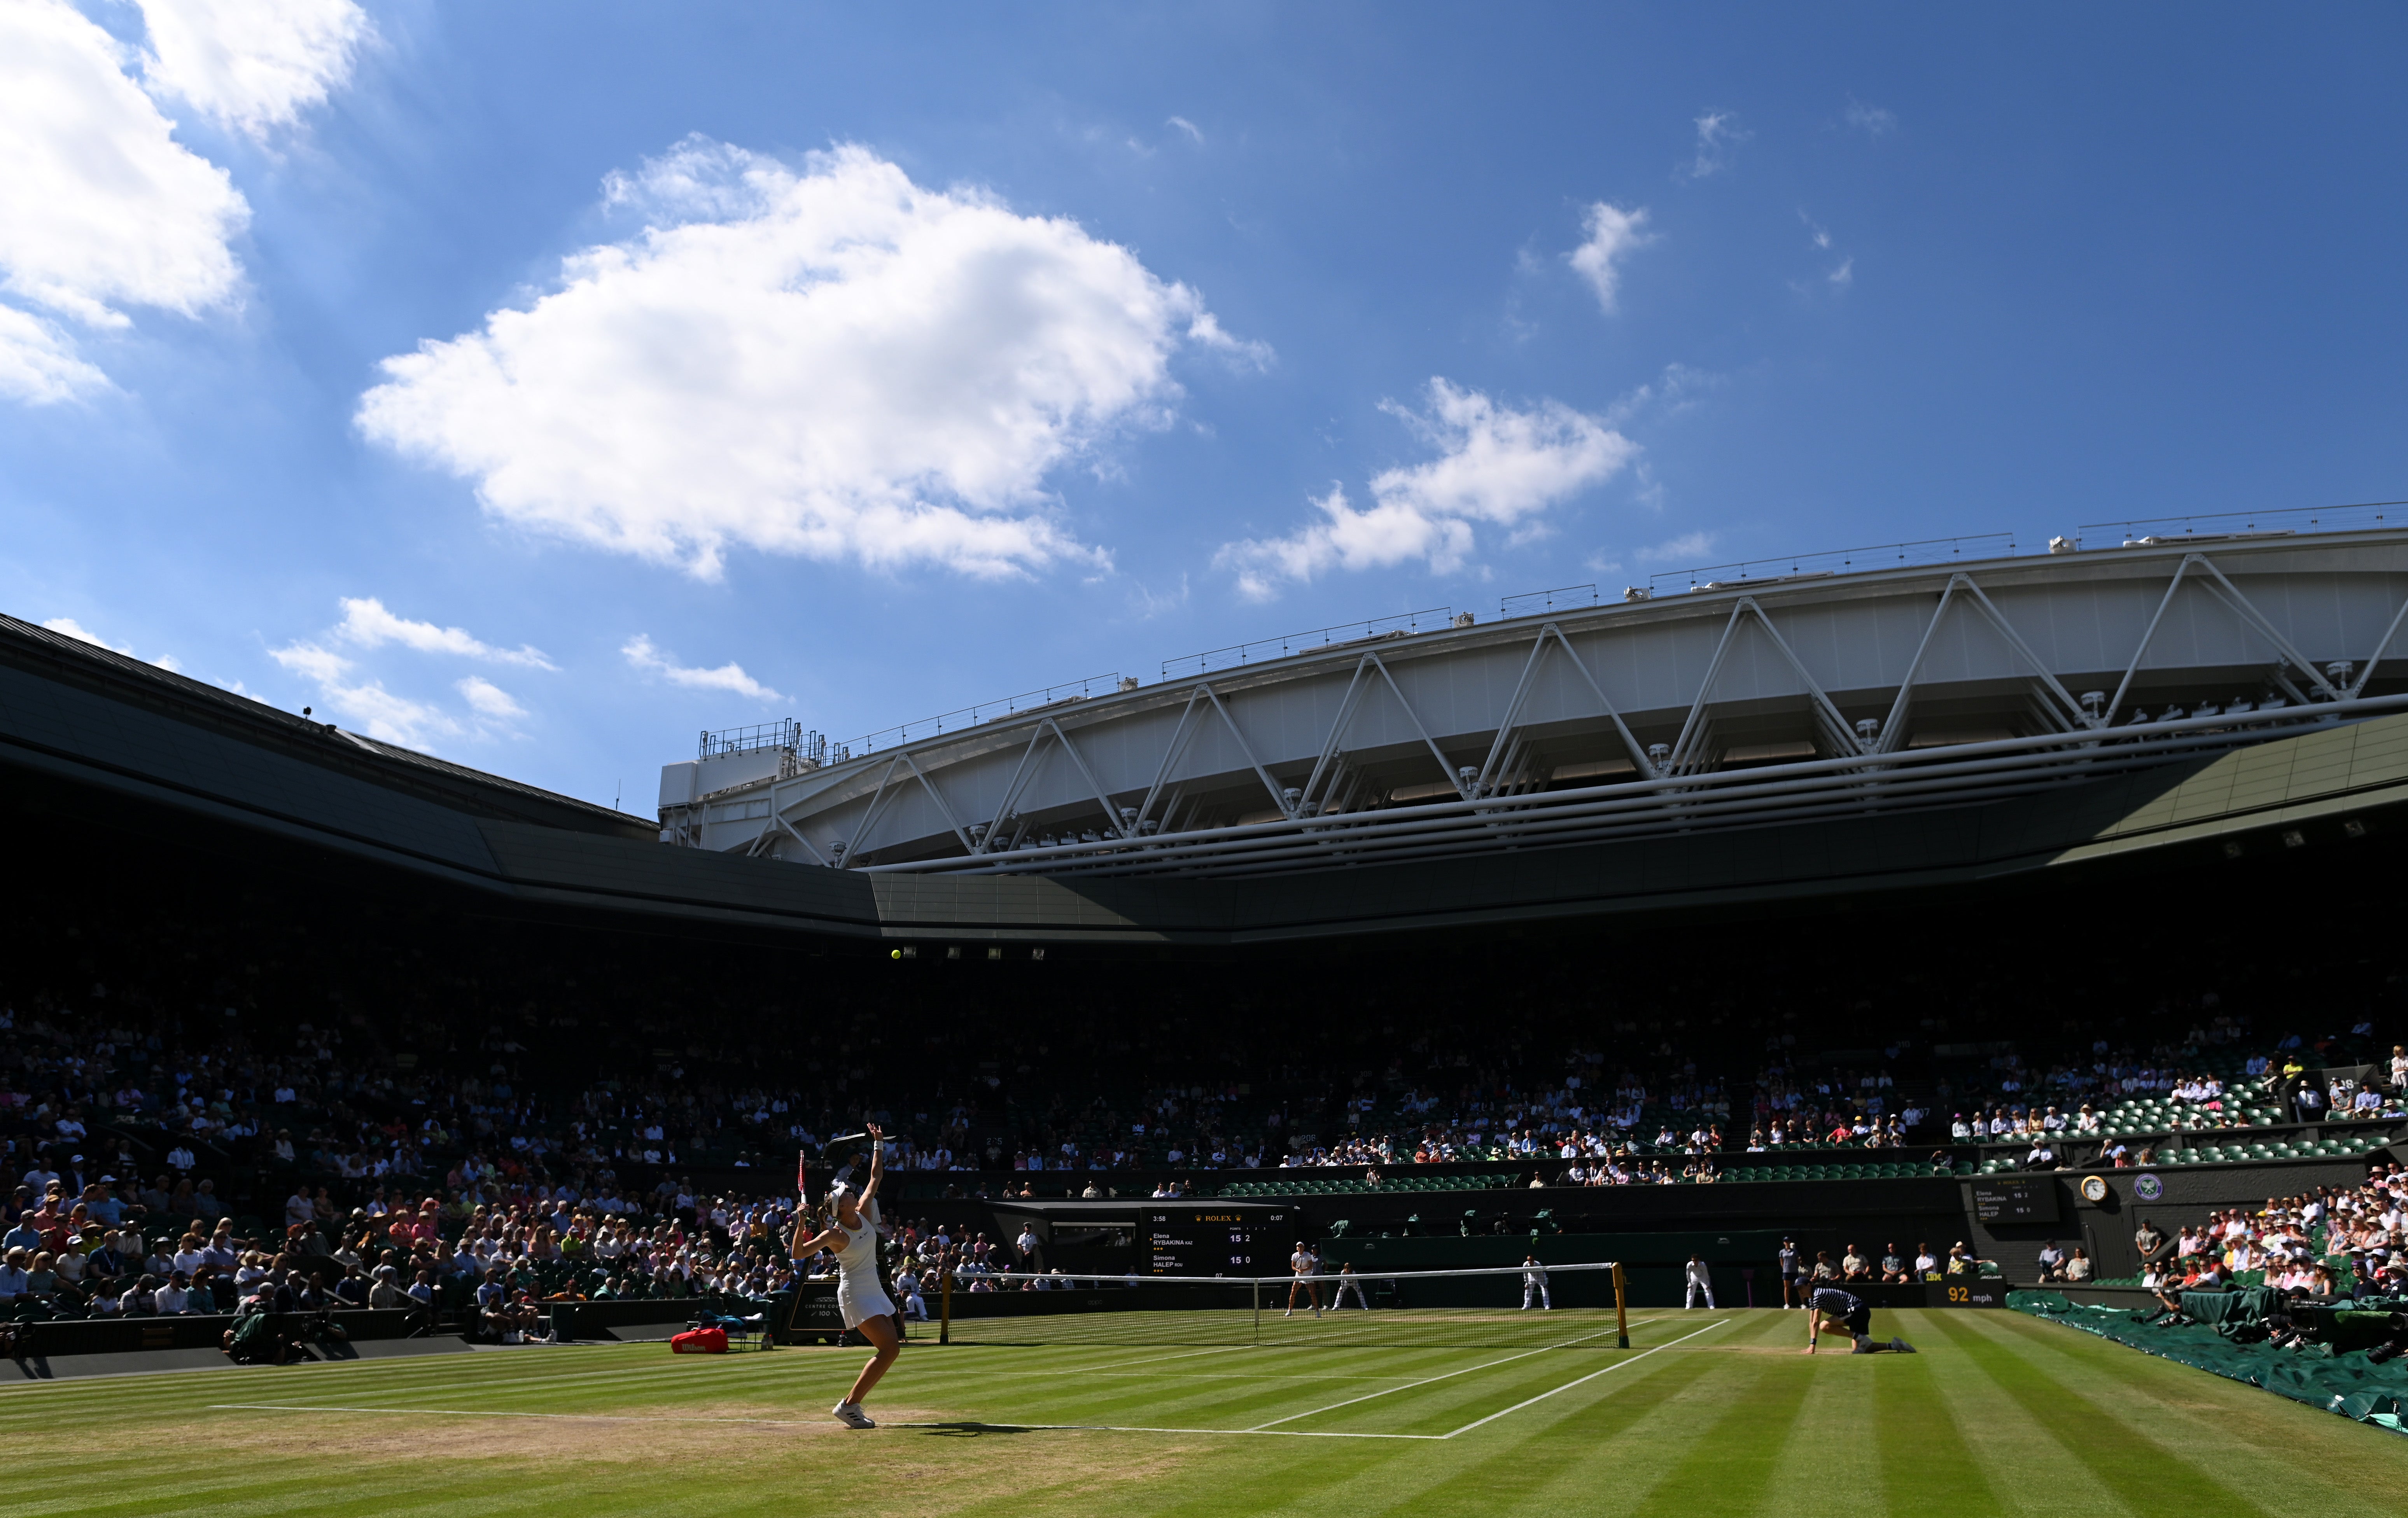 A view inside Wimbledon’s Centre Court